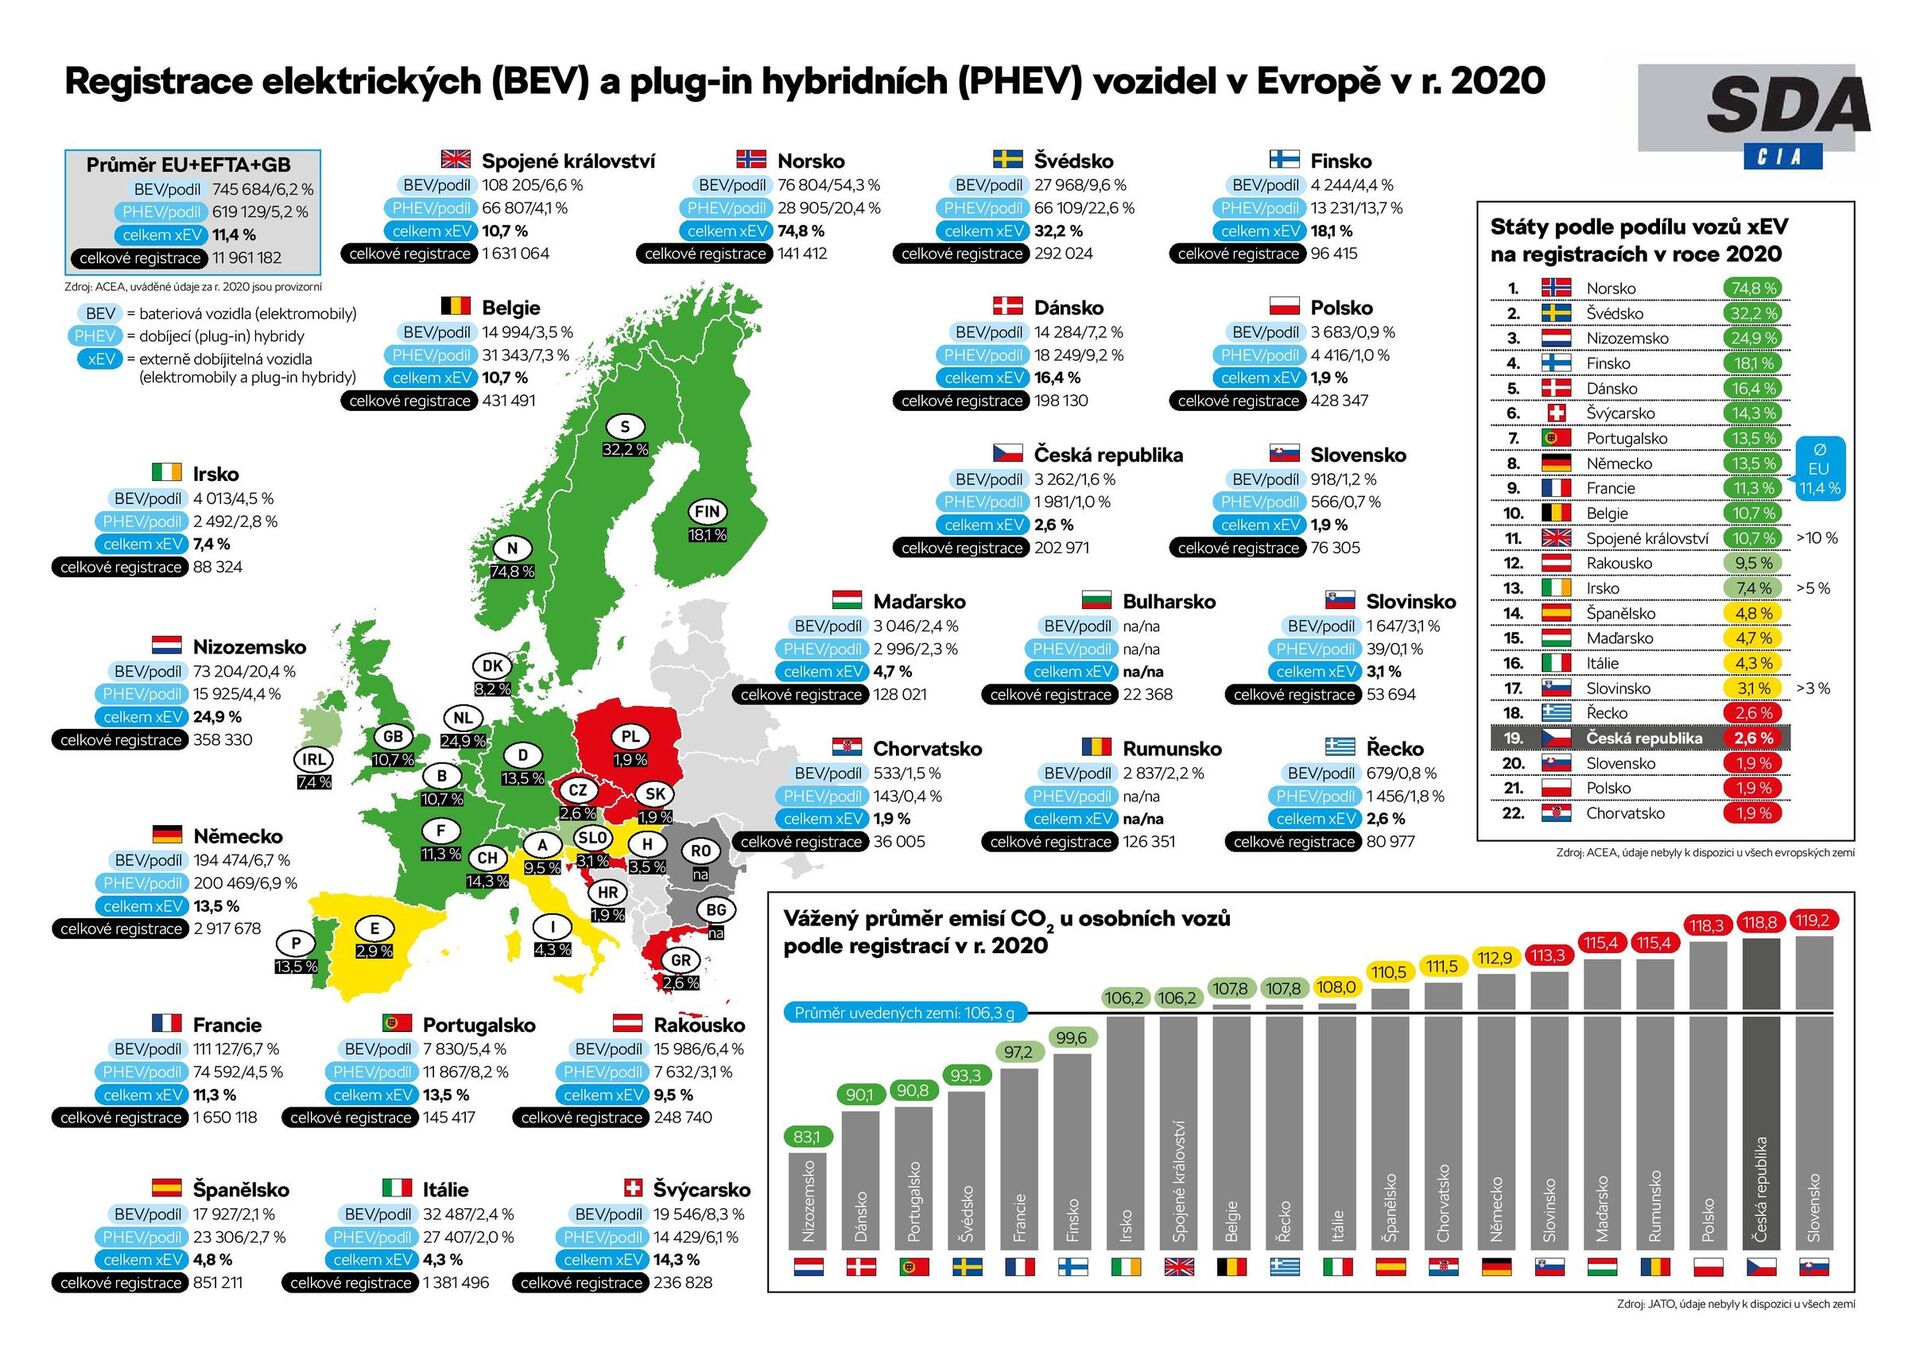 Registrace BEV a PHEV v Evropě 2020